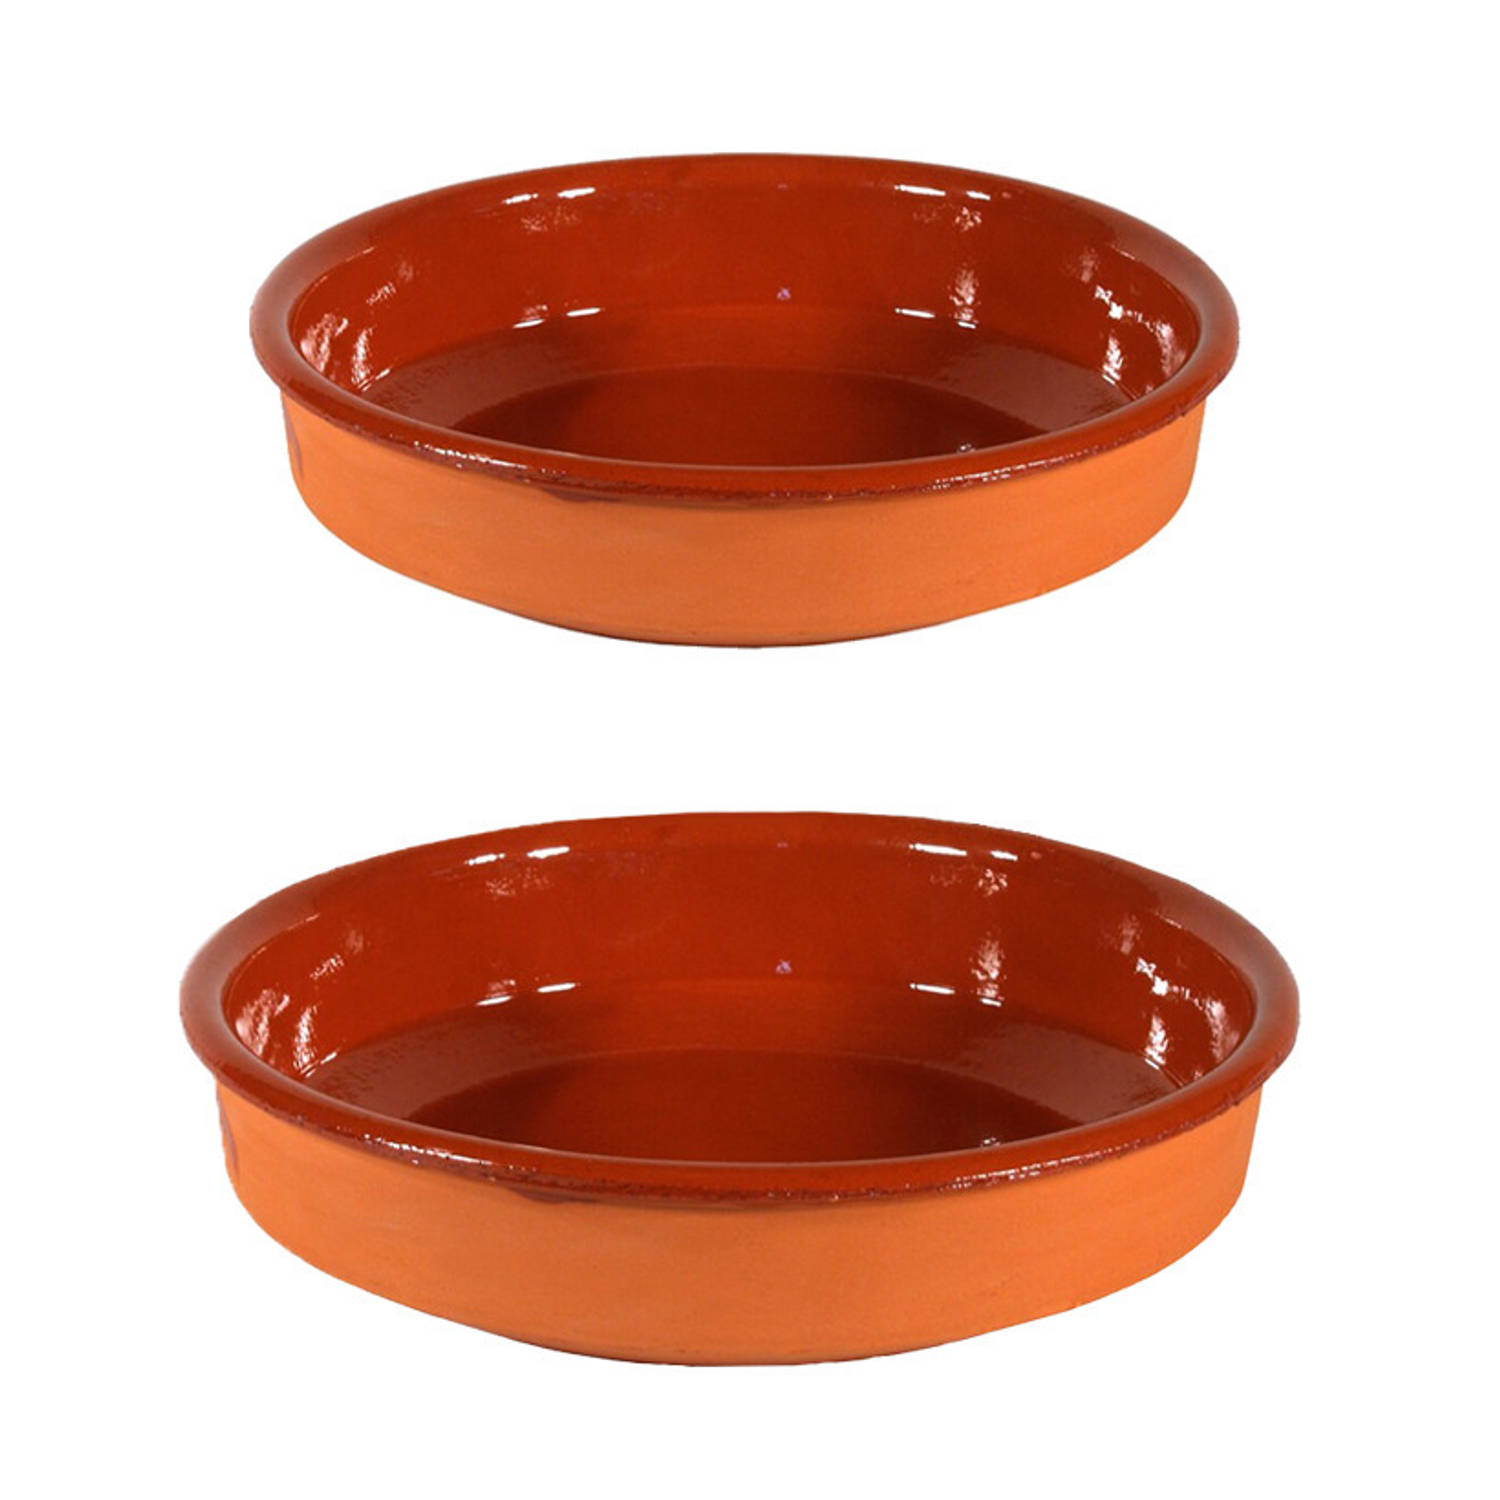 2x Terracotta hapjes/tapas borden/schalen 35 cm/26 cm - Snack en tapasschalen